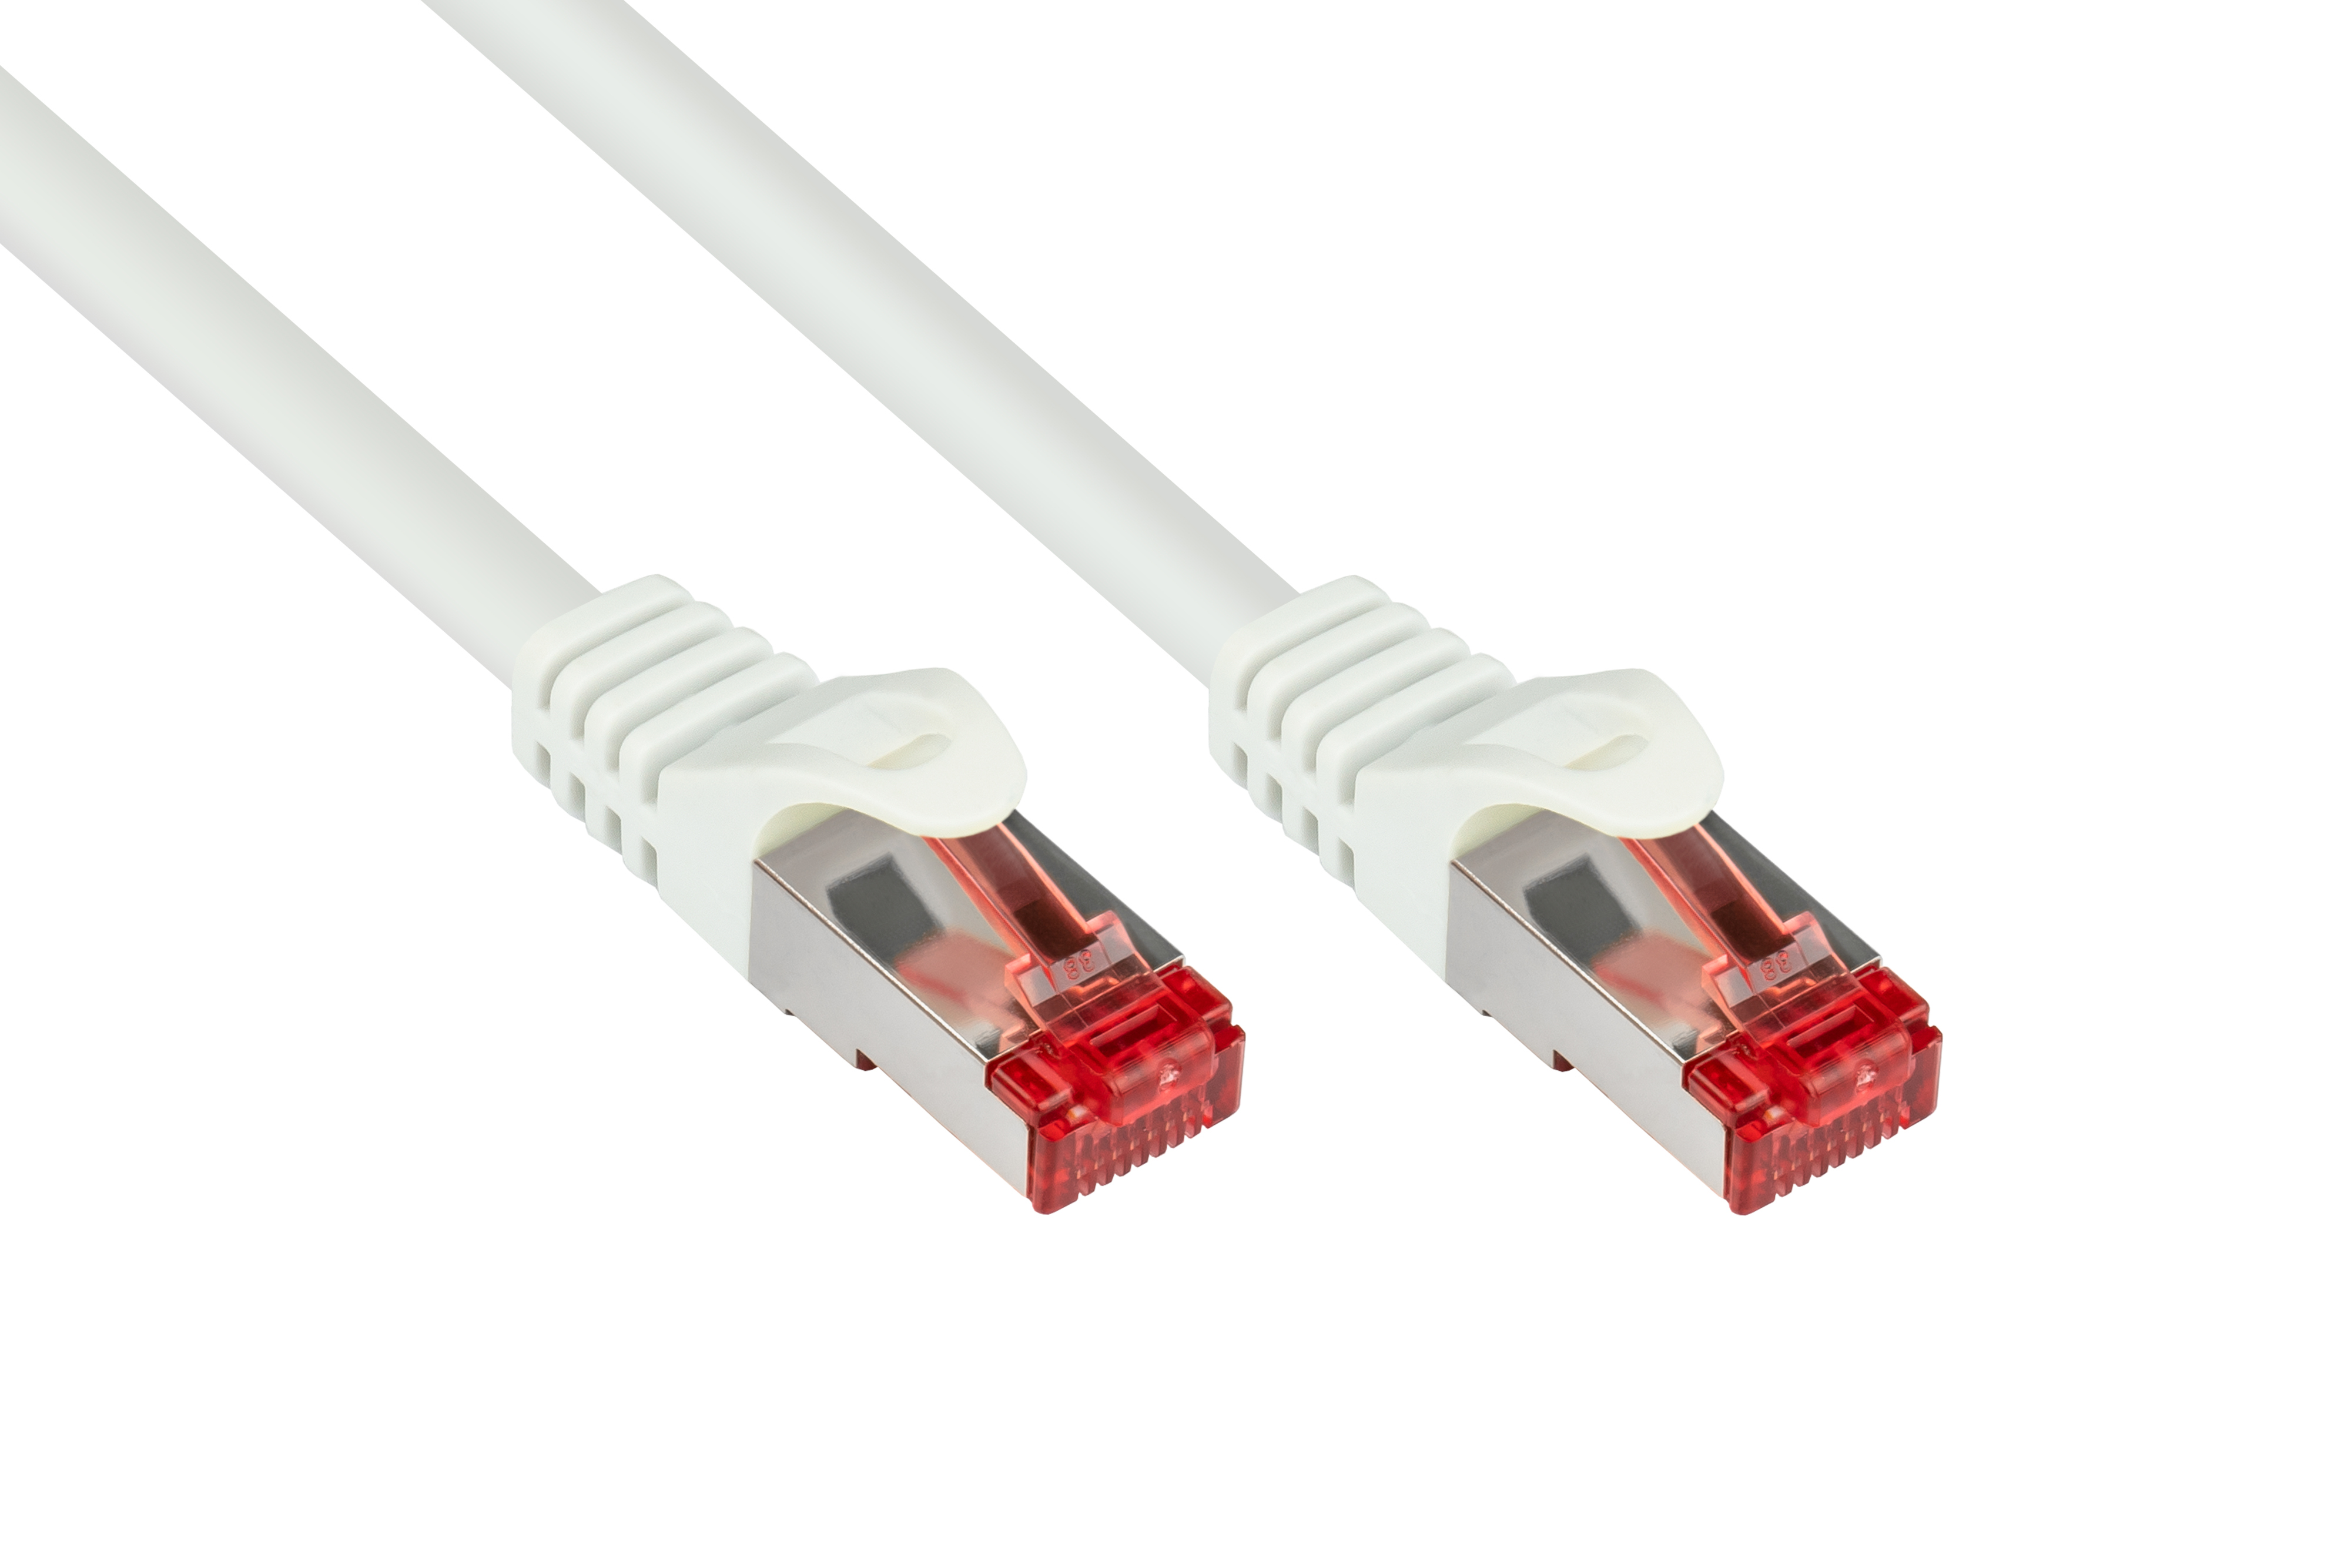 S/FTP, GOOD Netzwerkkabel, weiß, PVC, 1,5 m 250MHz, CONNECTIONS PiMF,